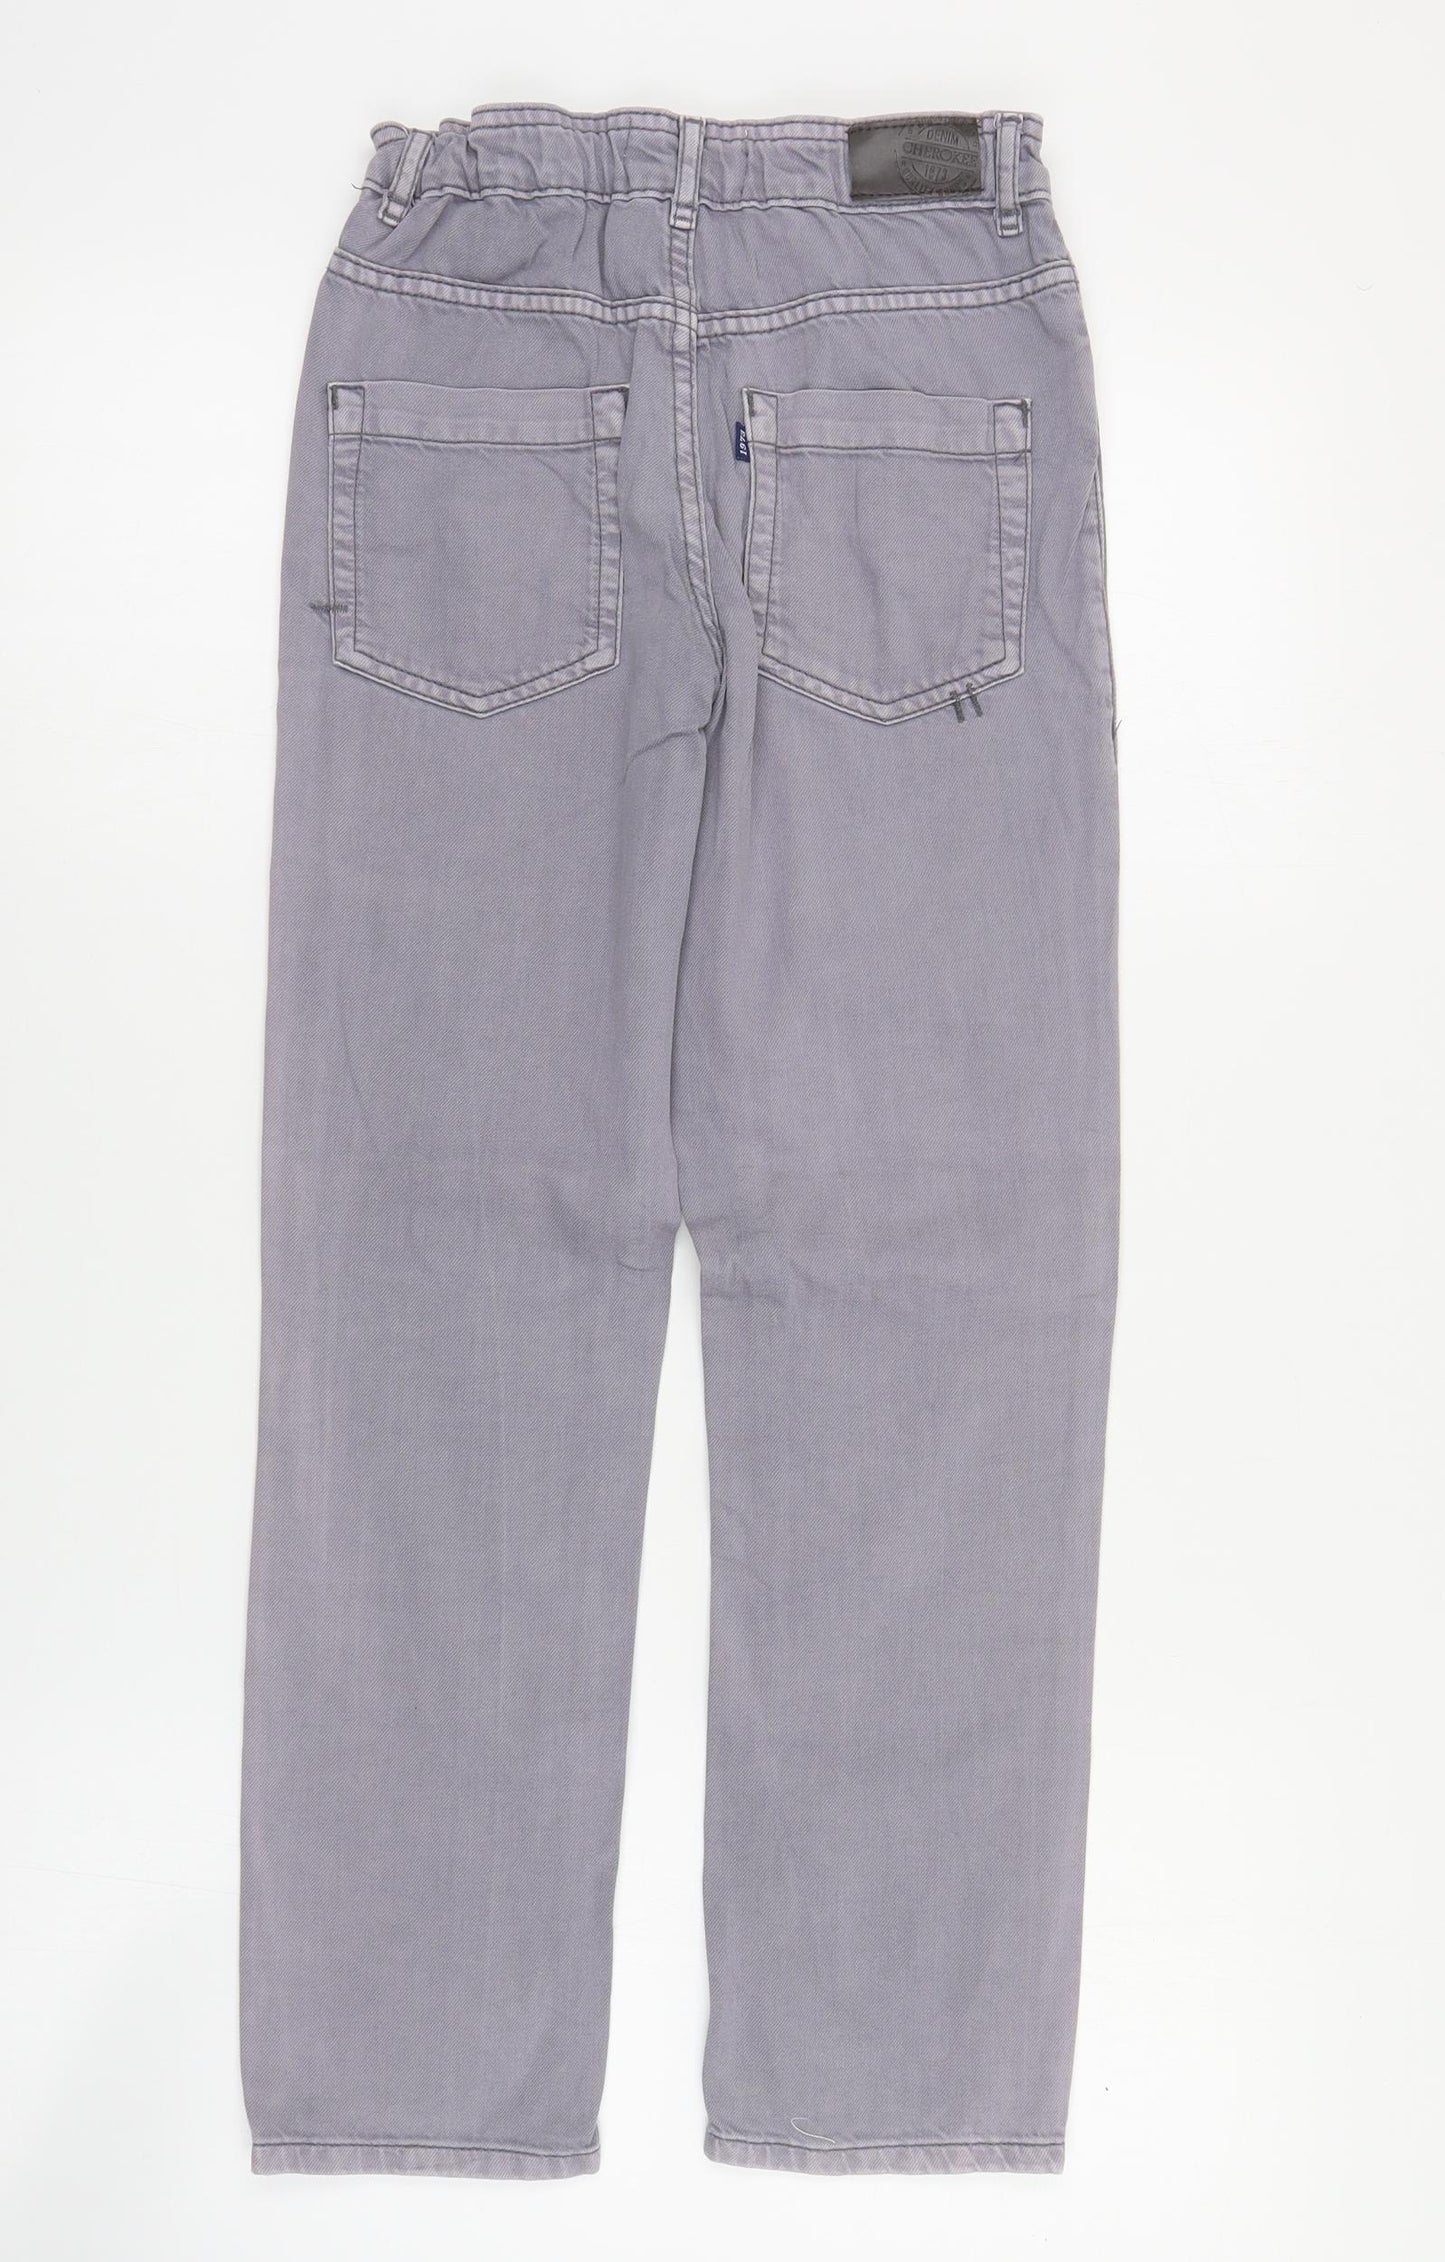 Cherokee Boys Purple  Cotton Straight Jeans Size 9-10 Years  Regular Zip